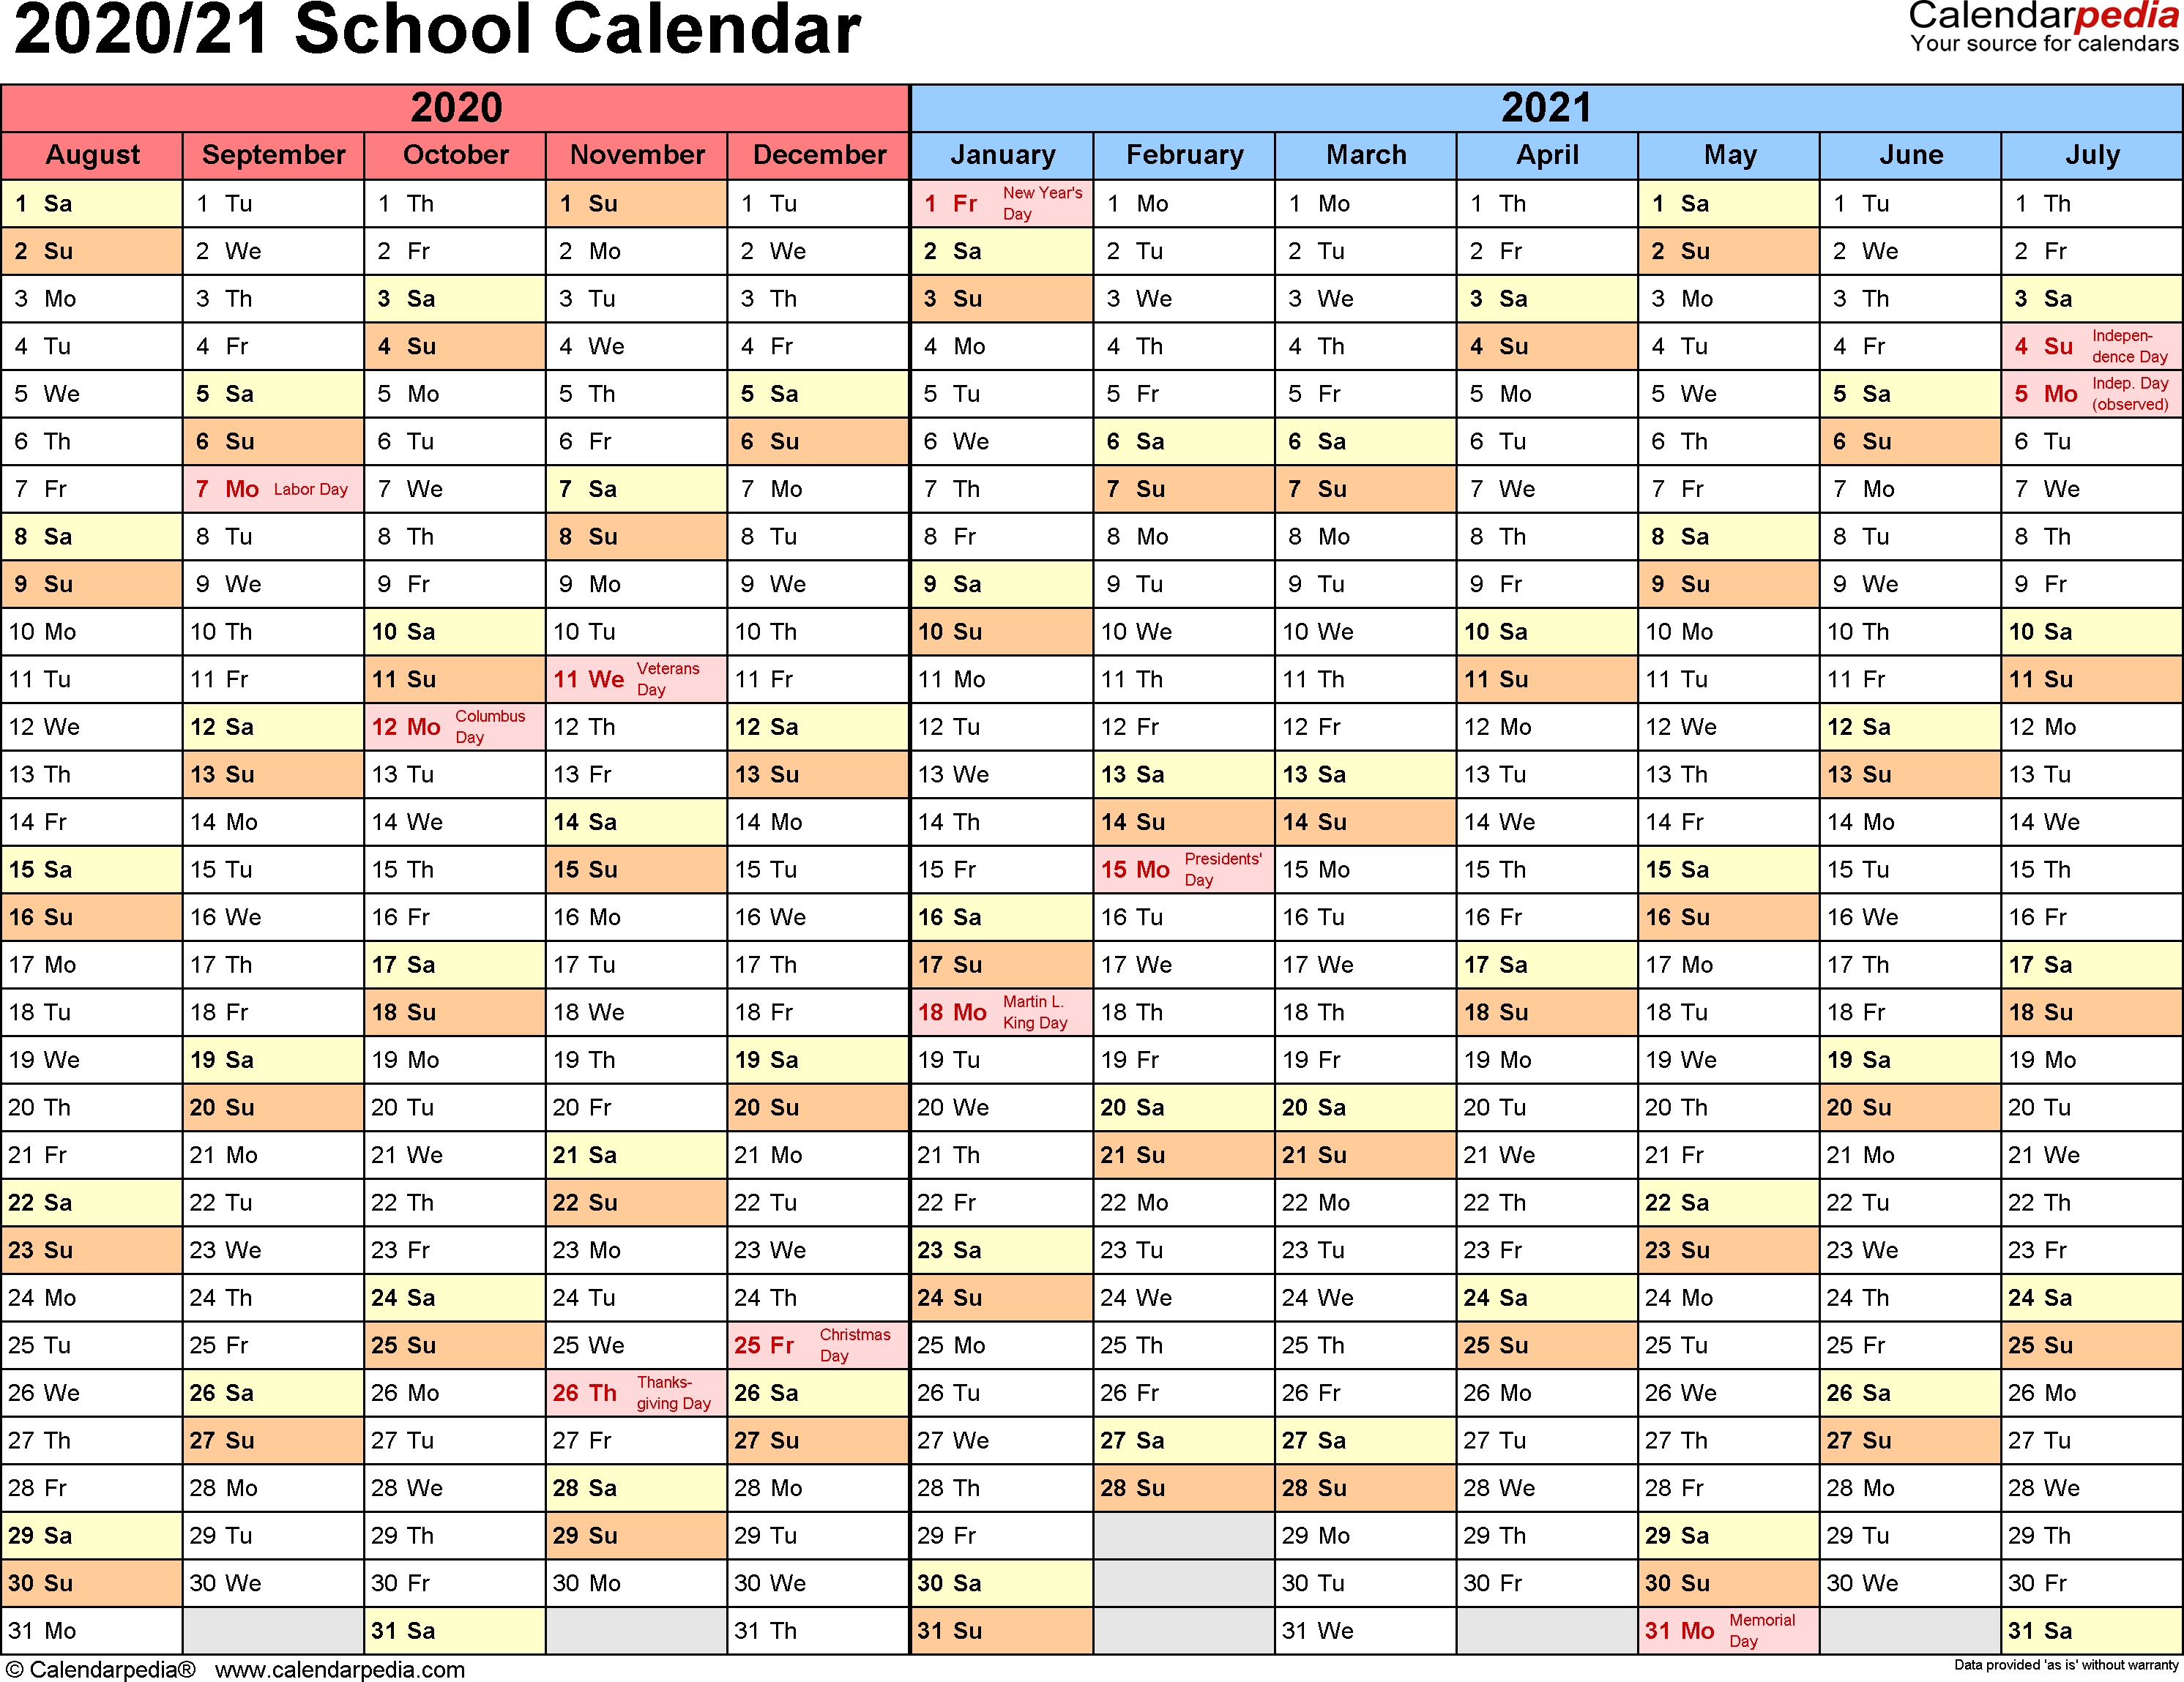 School Calendars 2020/2021 As Free Printable Word Templates-School Calendar Template 2020-20